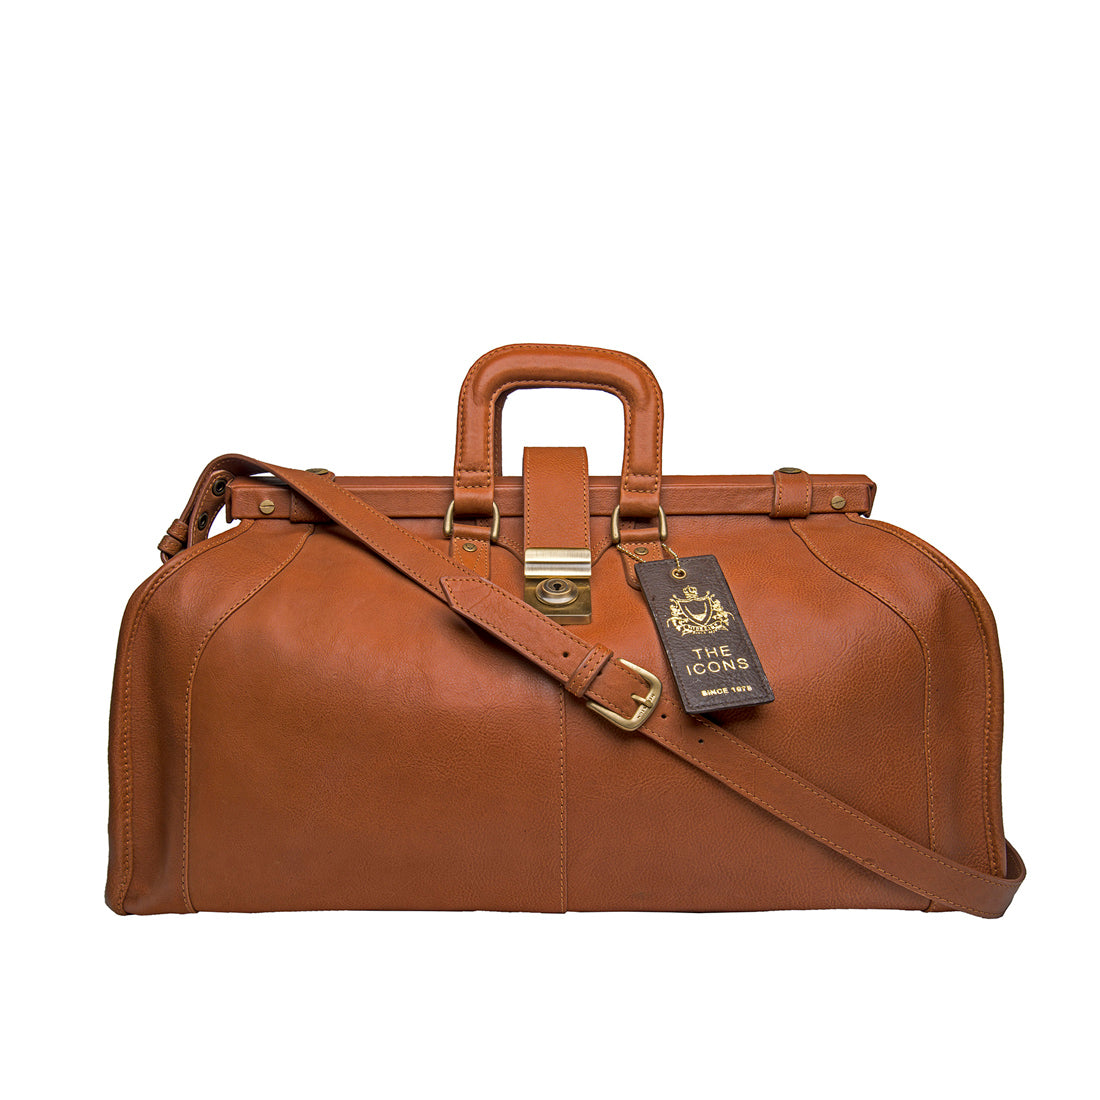 Leather Duffel Bags, Weekender Bags